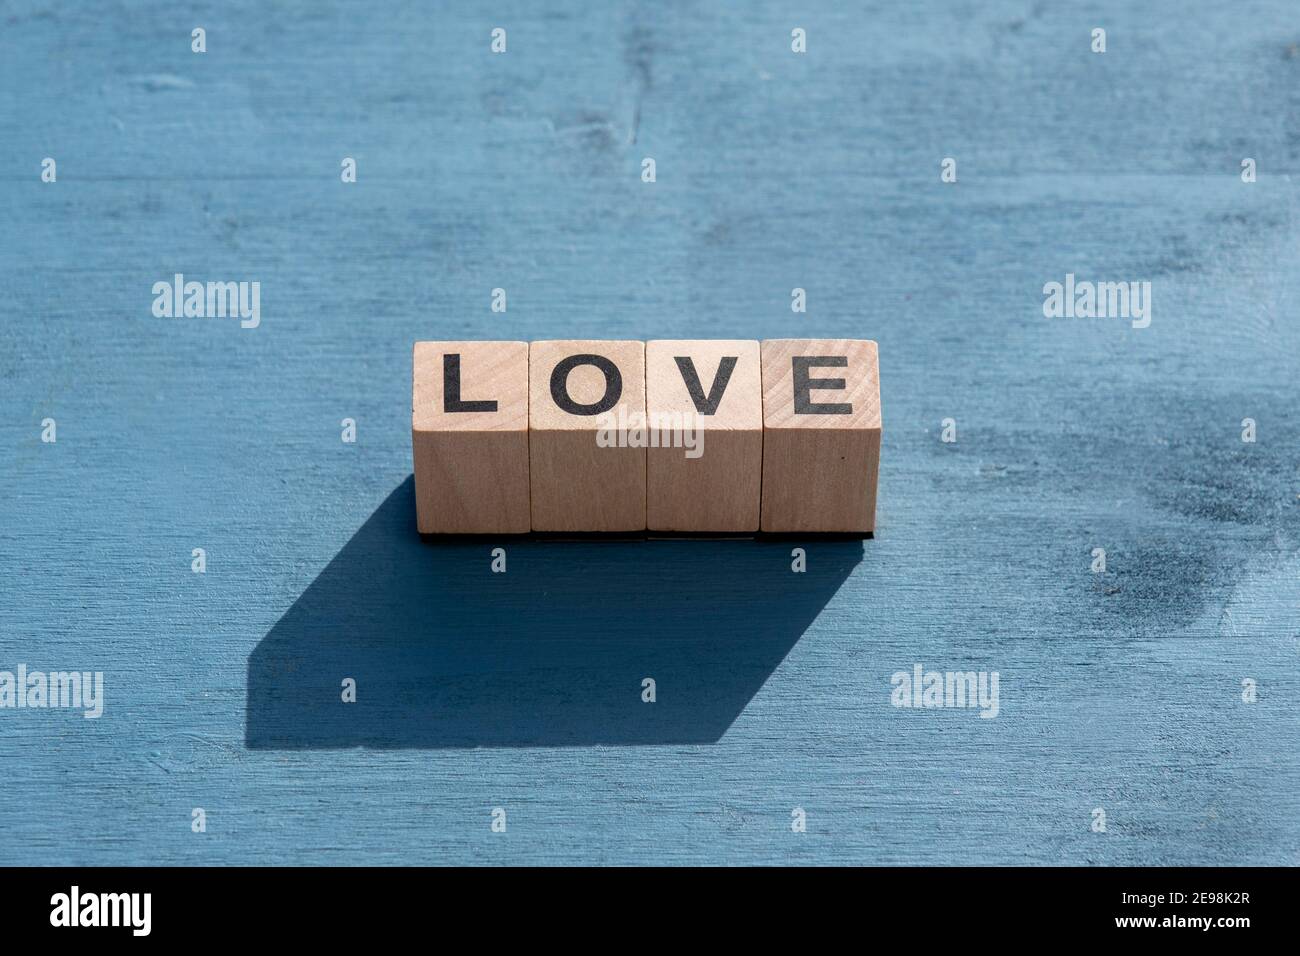 El día de Valentin y el concepto de emoción feliz: La palabra AMOR escrito con un solo cubo de madera cartas hechas para juegos de mesa en la superficie con textura azul. Foto de stock